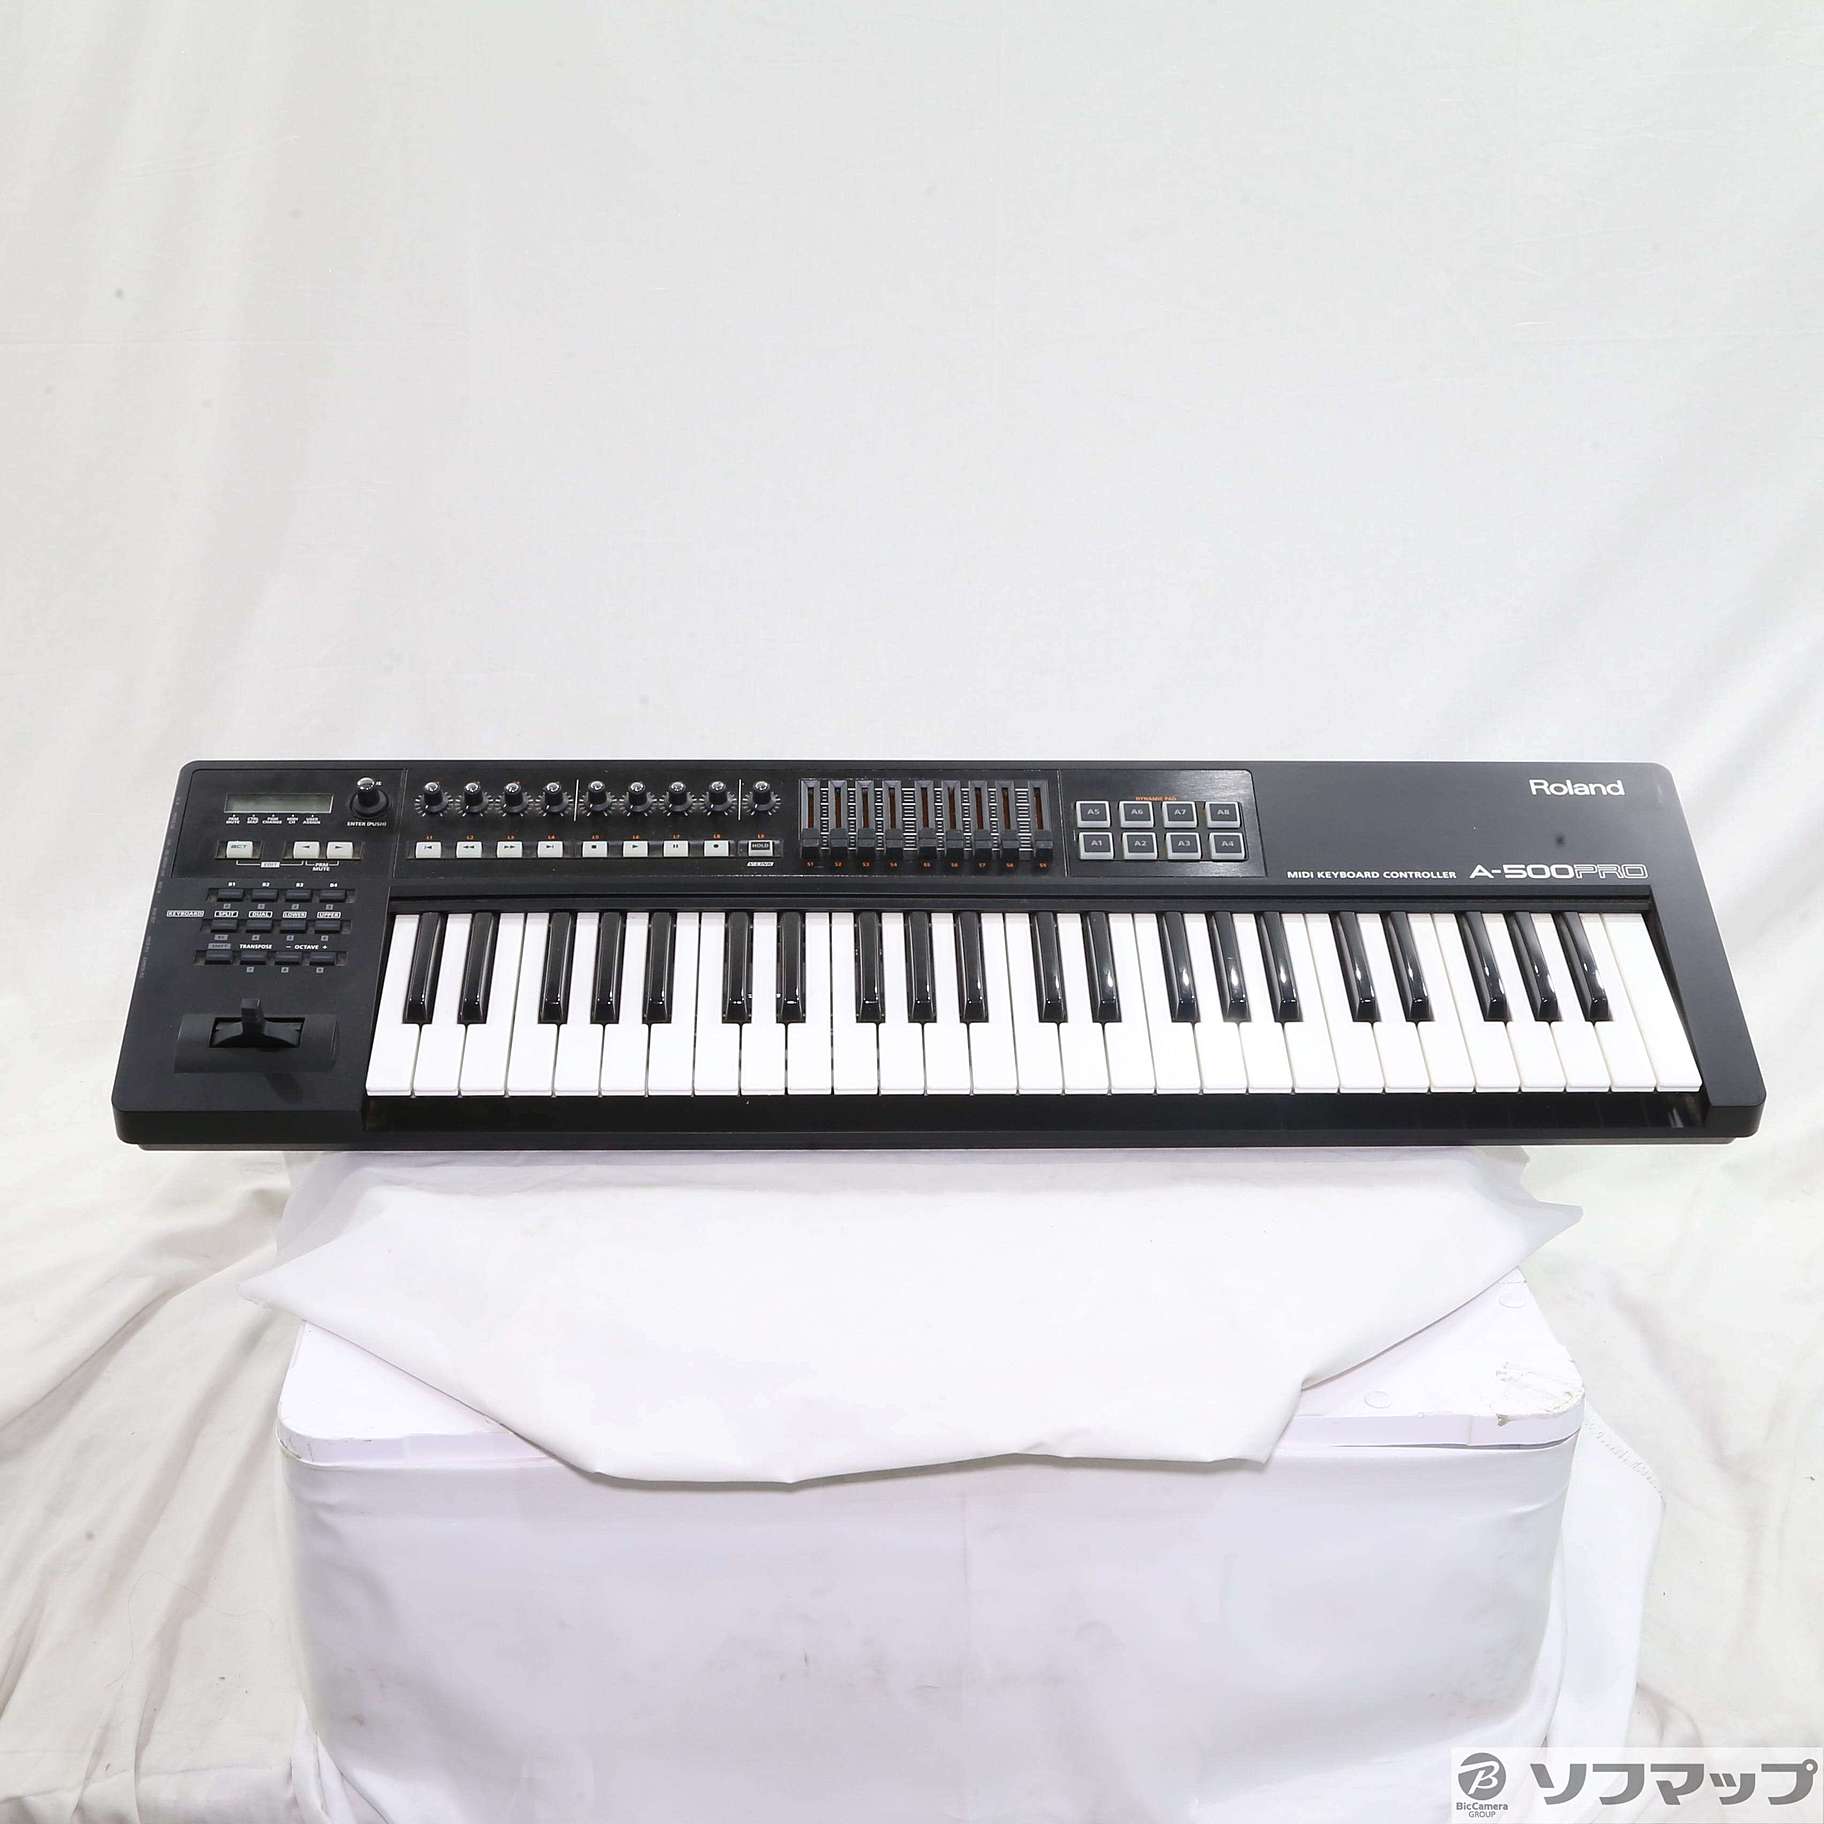 Roland A-500 PRO MIDIキーボード 鍵盤 49鍵盤MIDIコントローラー